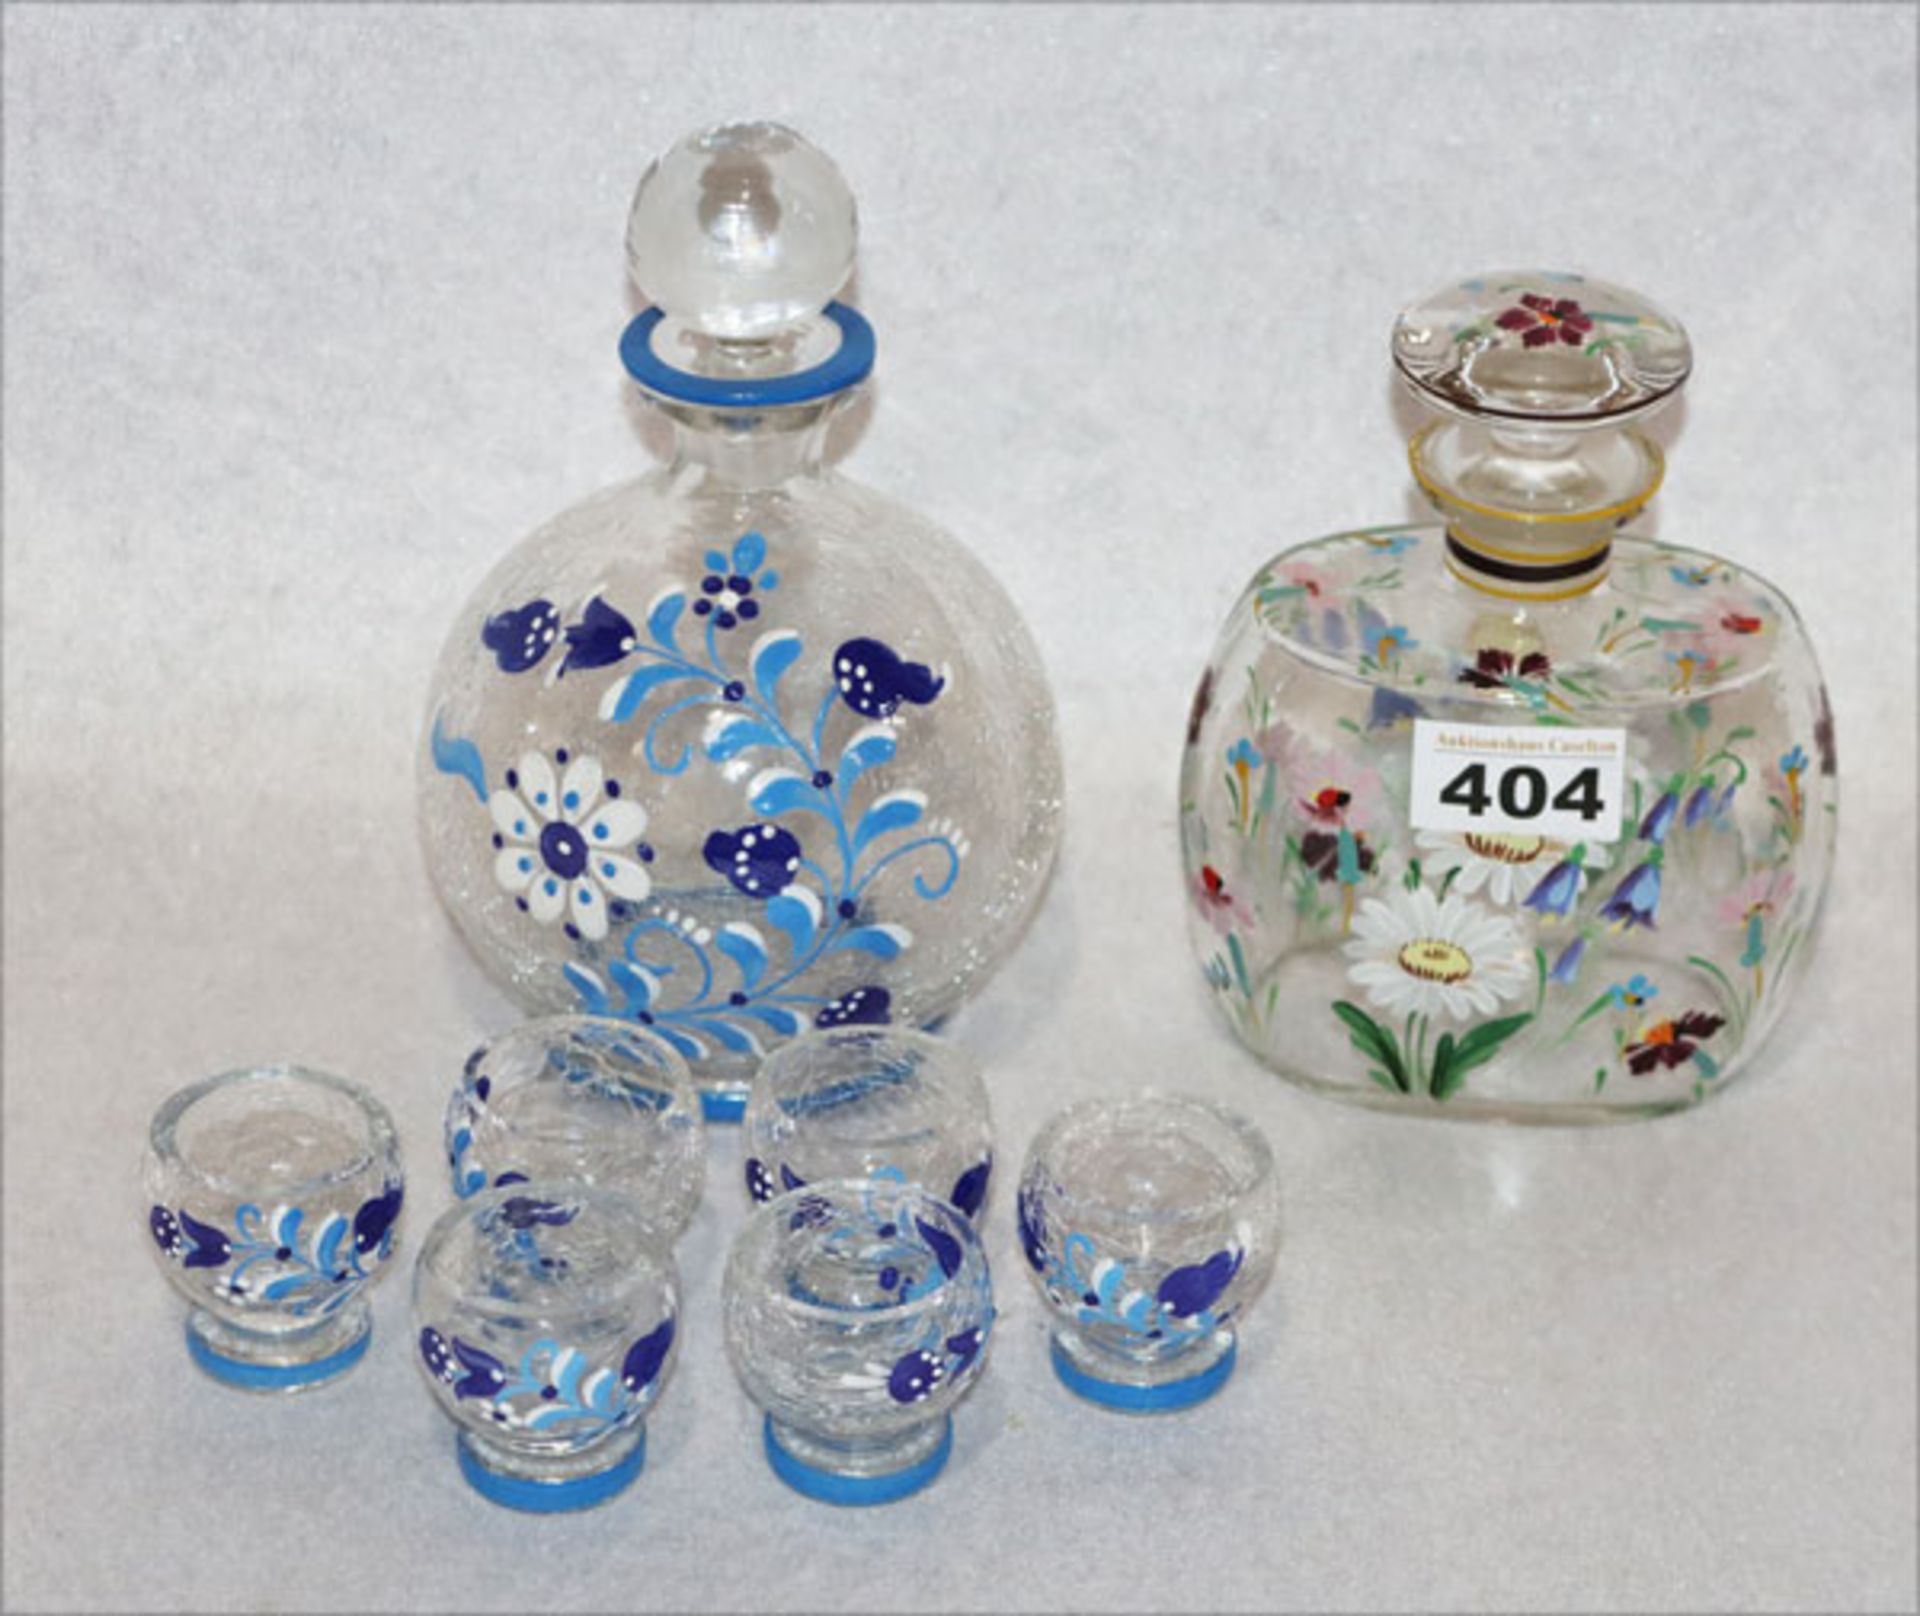 Glas Schnapsflasche mit 6 passenden Gläsern, blaue Blumenbemalung, H 22/5 cm, und Glas